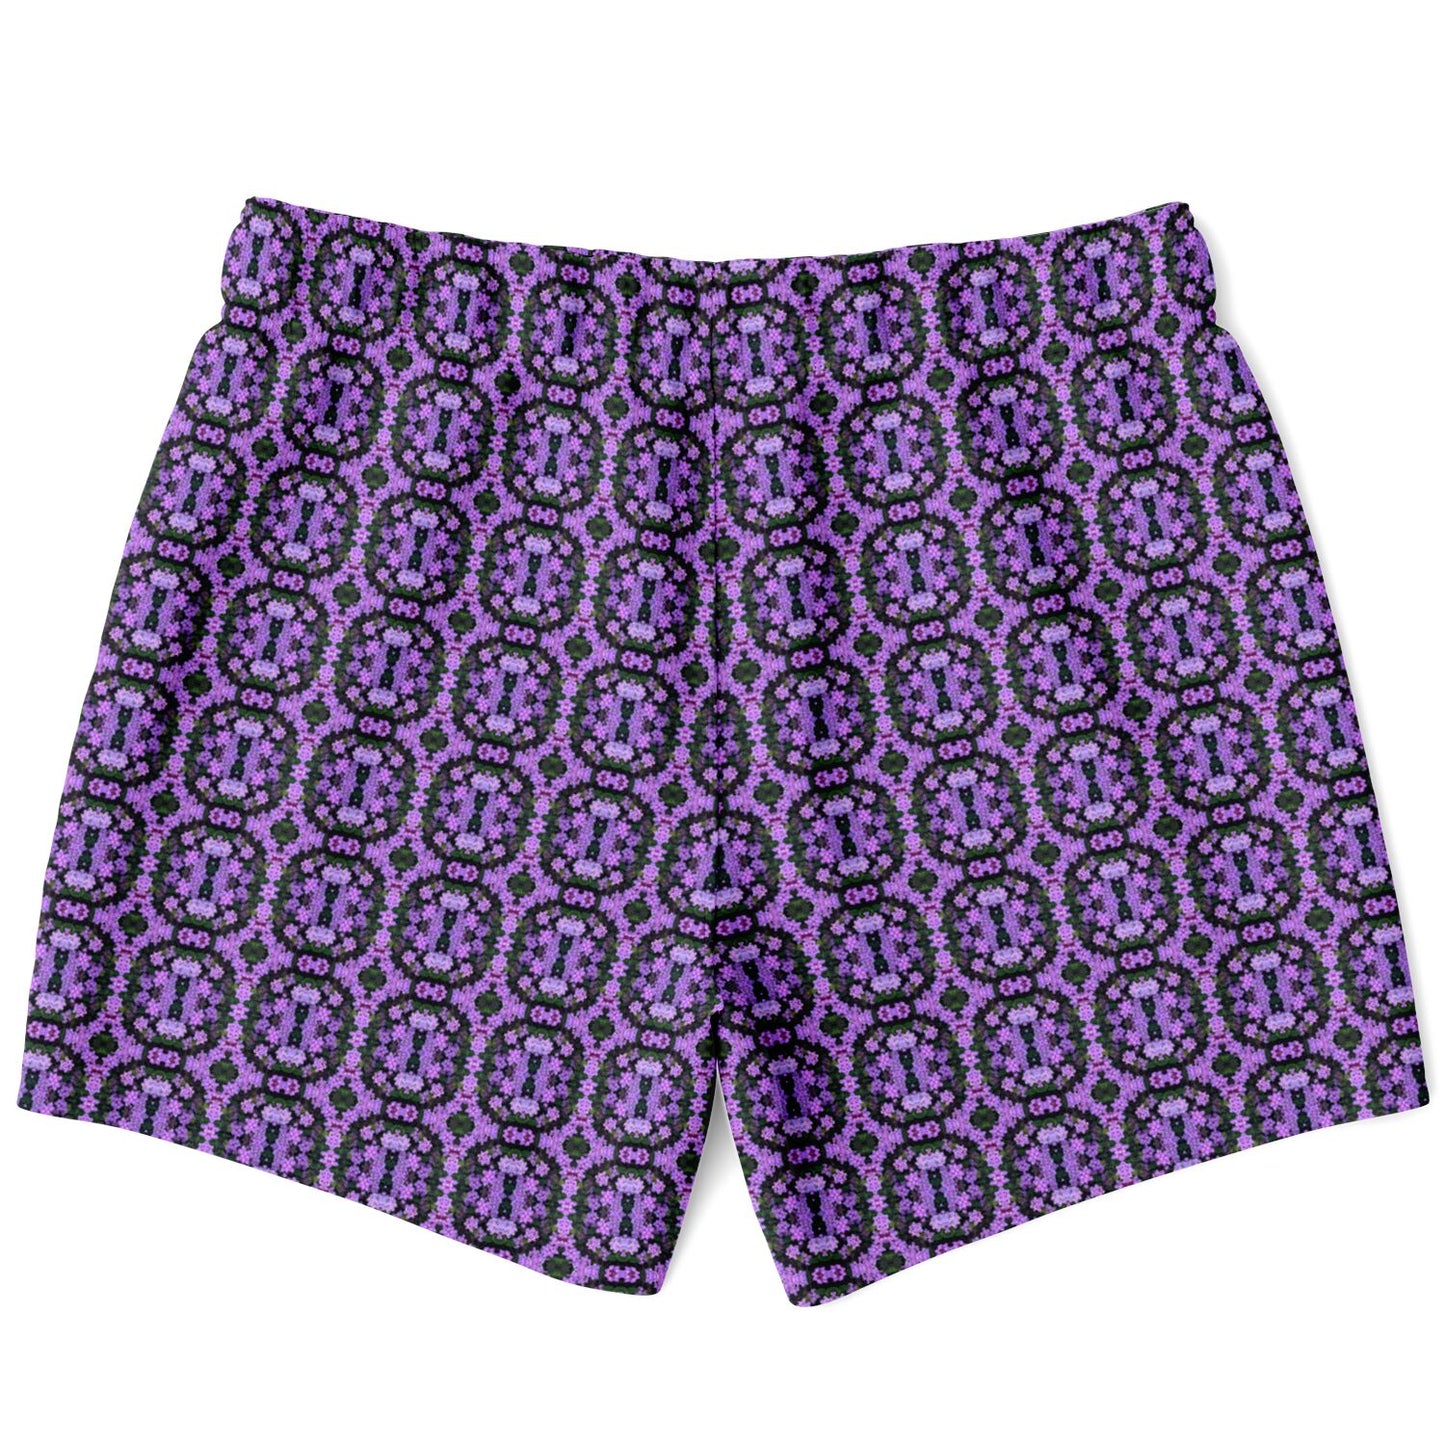 Swim Trunks (Violet Rings)